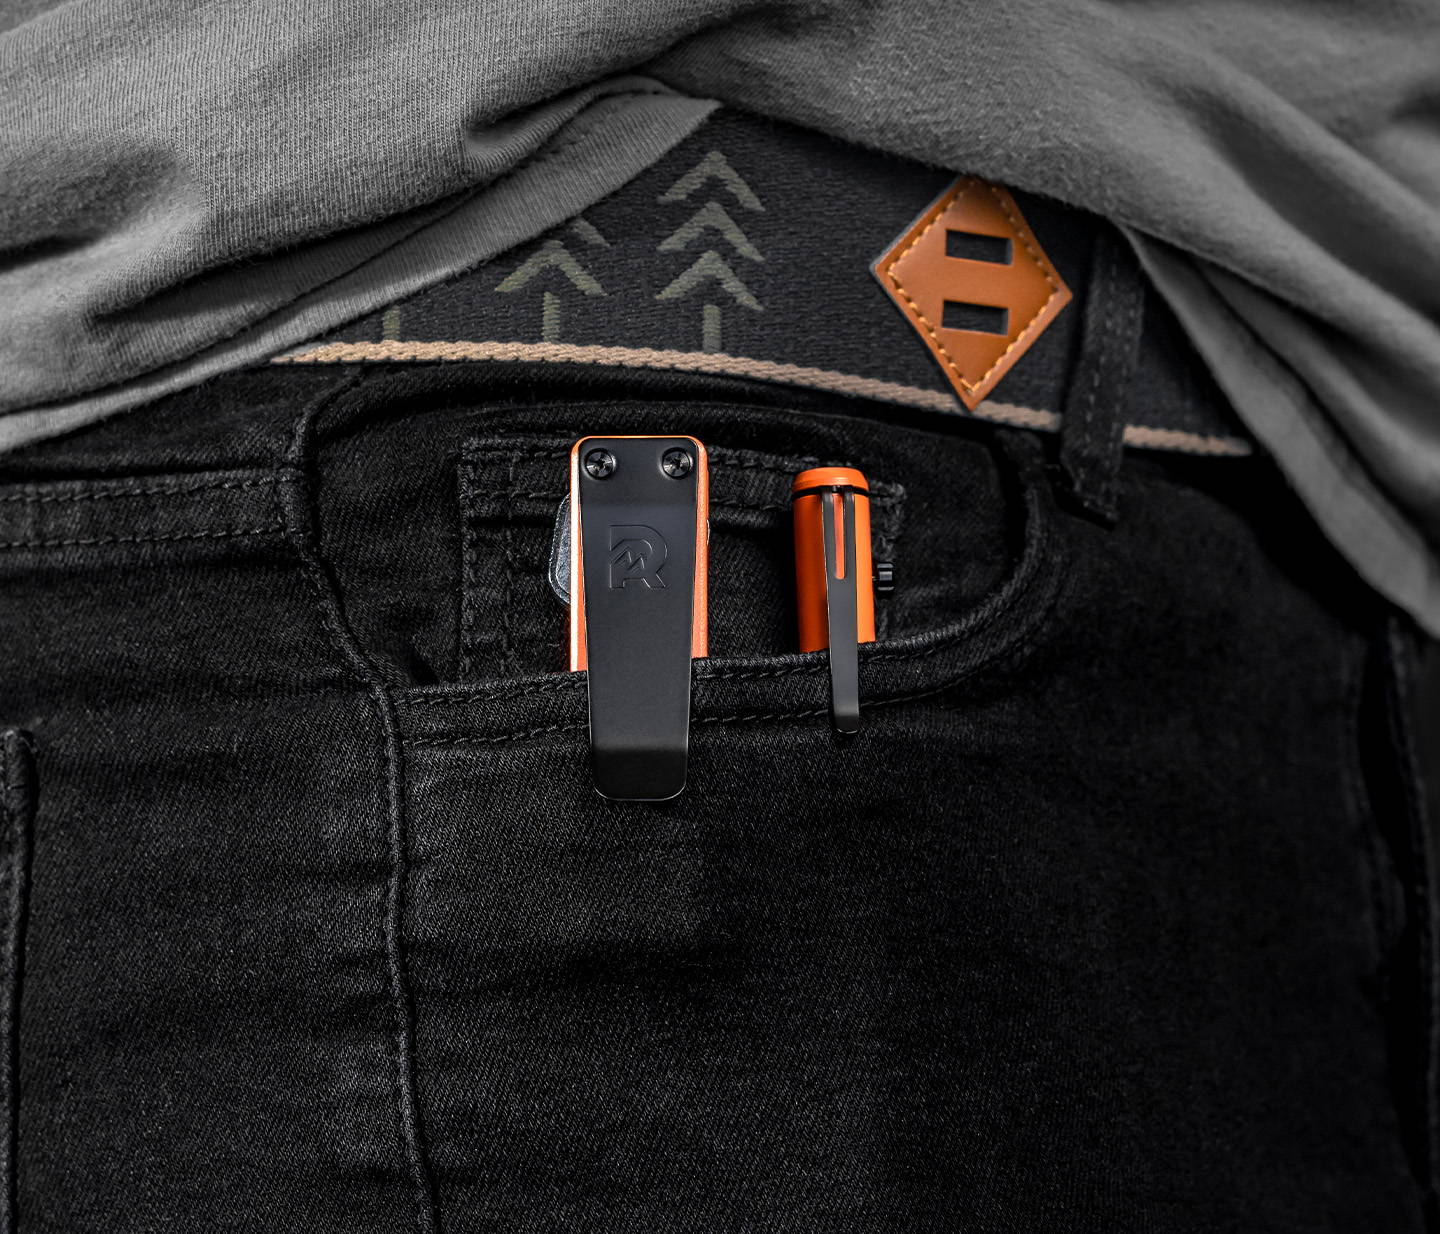 Basecamp Orange Bolt Action pen and keycase clipped on side pocket